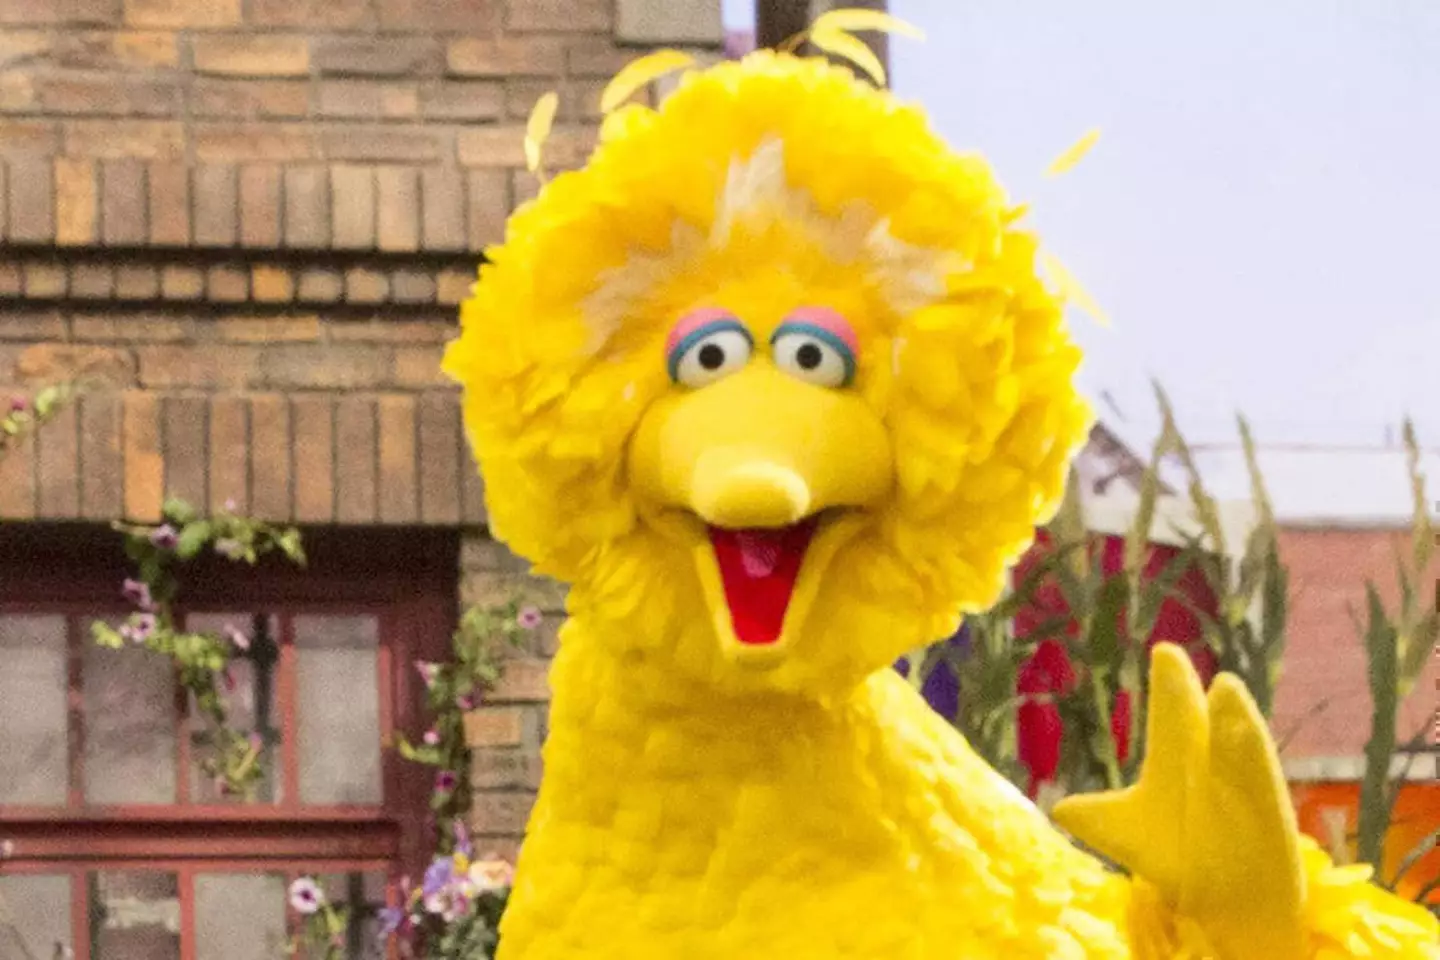 Senator Cruz has also fallen out with Sesame Street character Big Bird before.